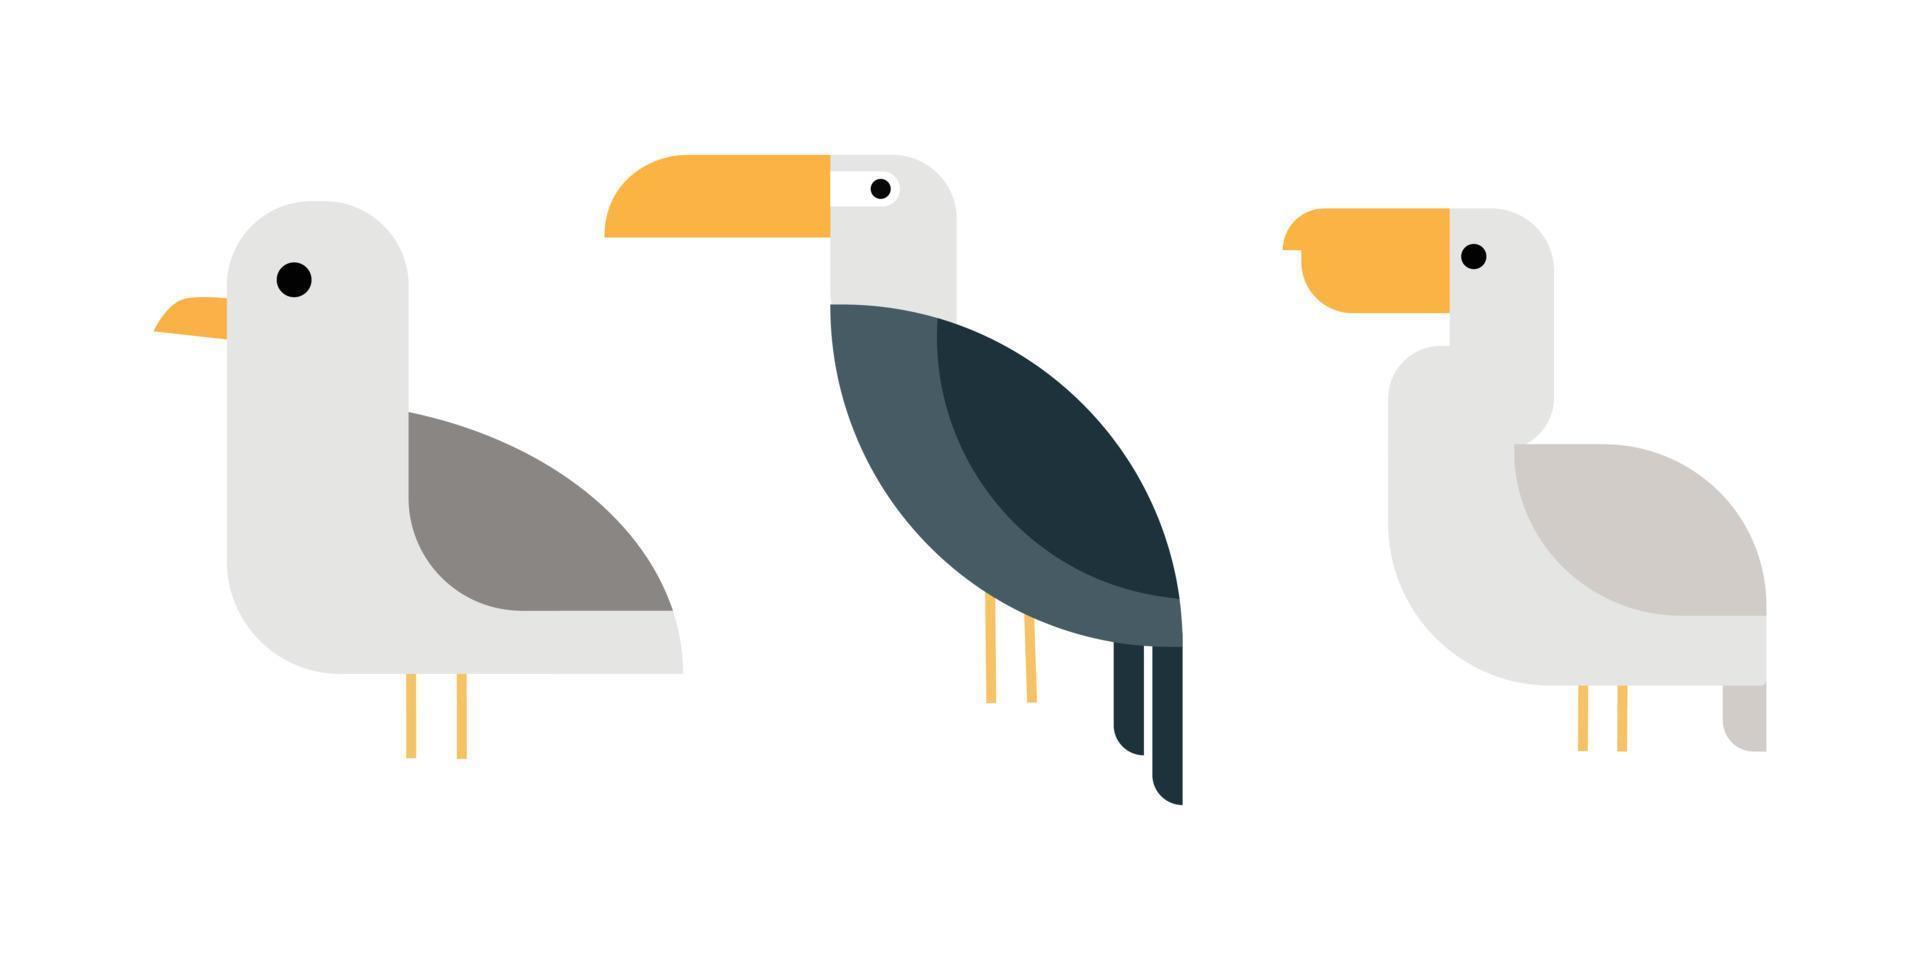 ilustraciones de diseño plano de pájaros en colores grises. vector